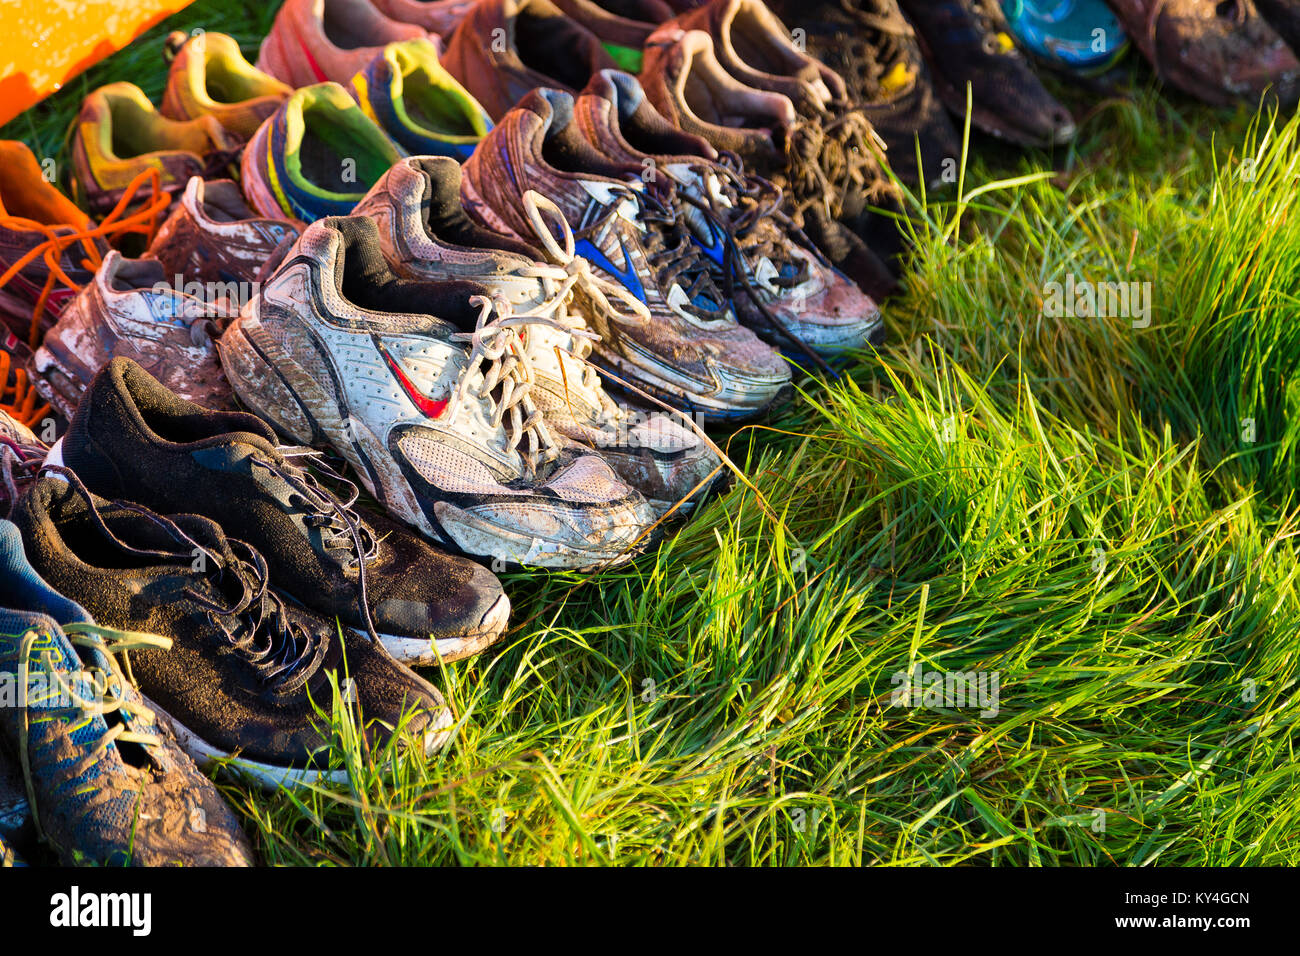 Sussex, Regno Unito. Scarpe abbandonate giacciono sull'erba dopo una dura Mudder evento. Foto Stock